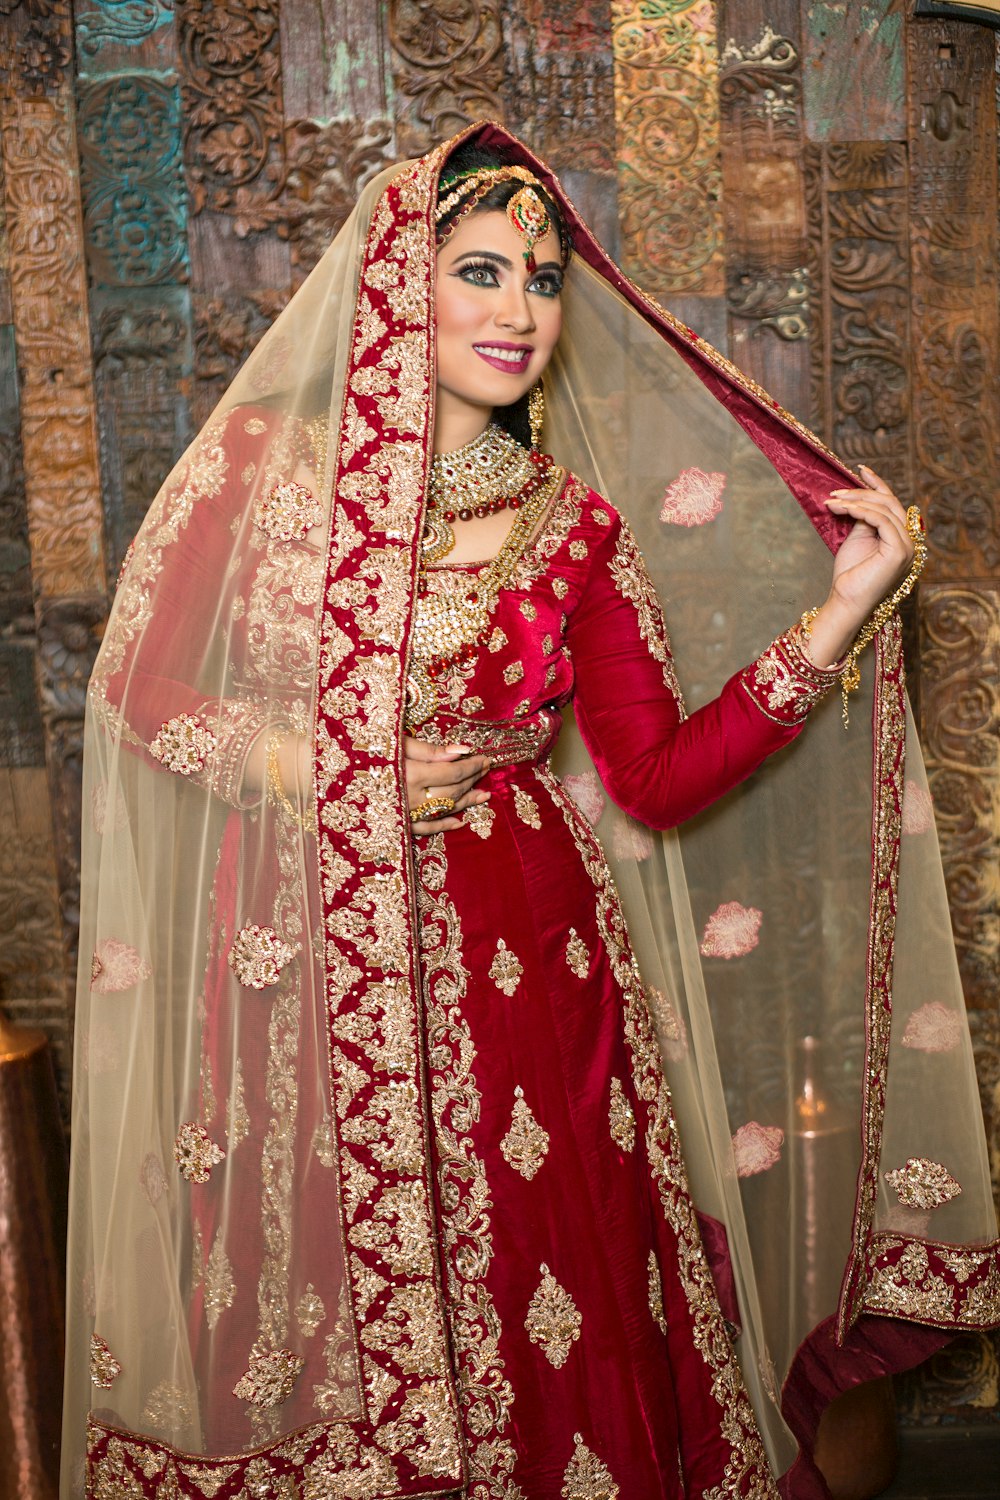 Femme en sari floral rouge et blanc